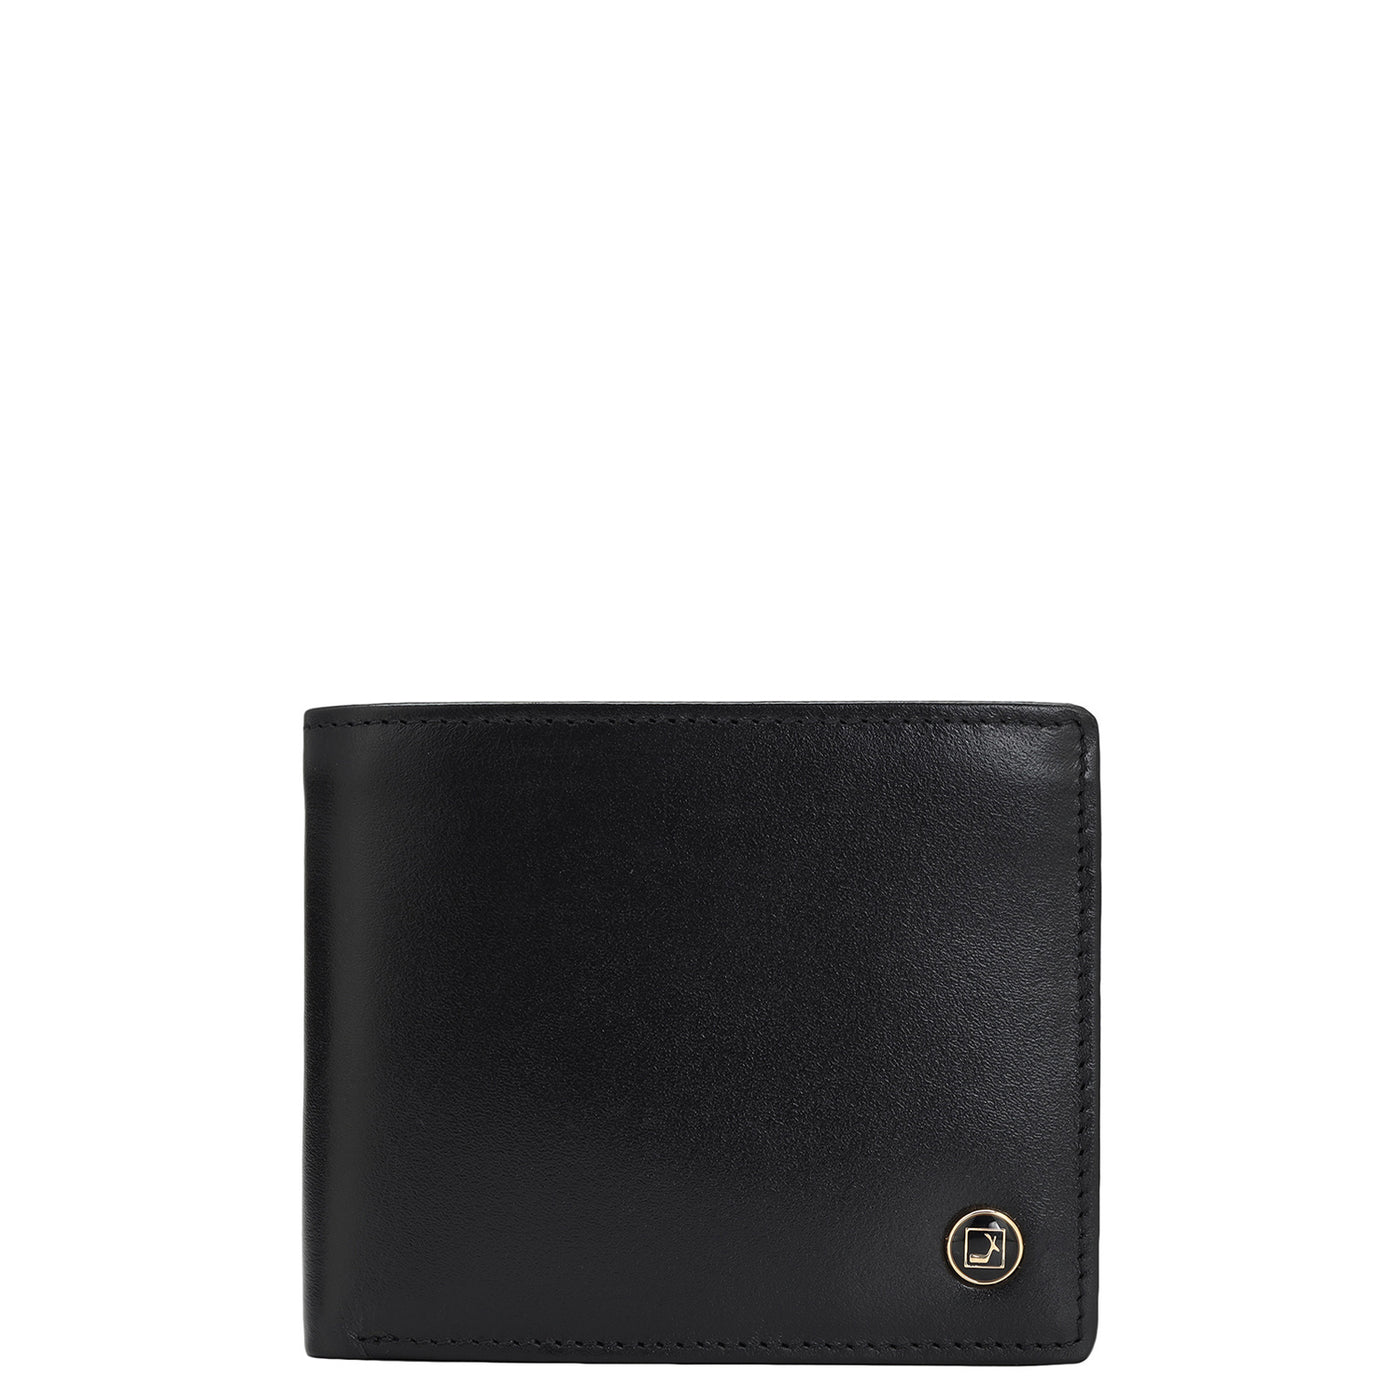 Plain Leather Mens Wallet - Black